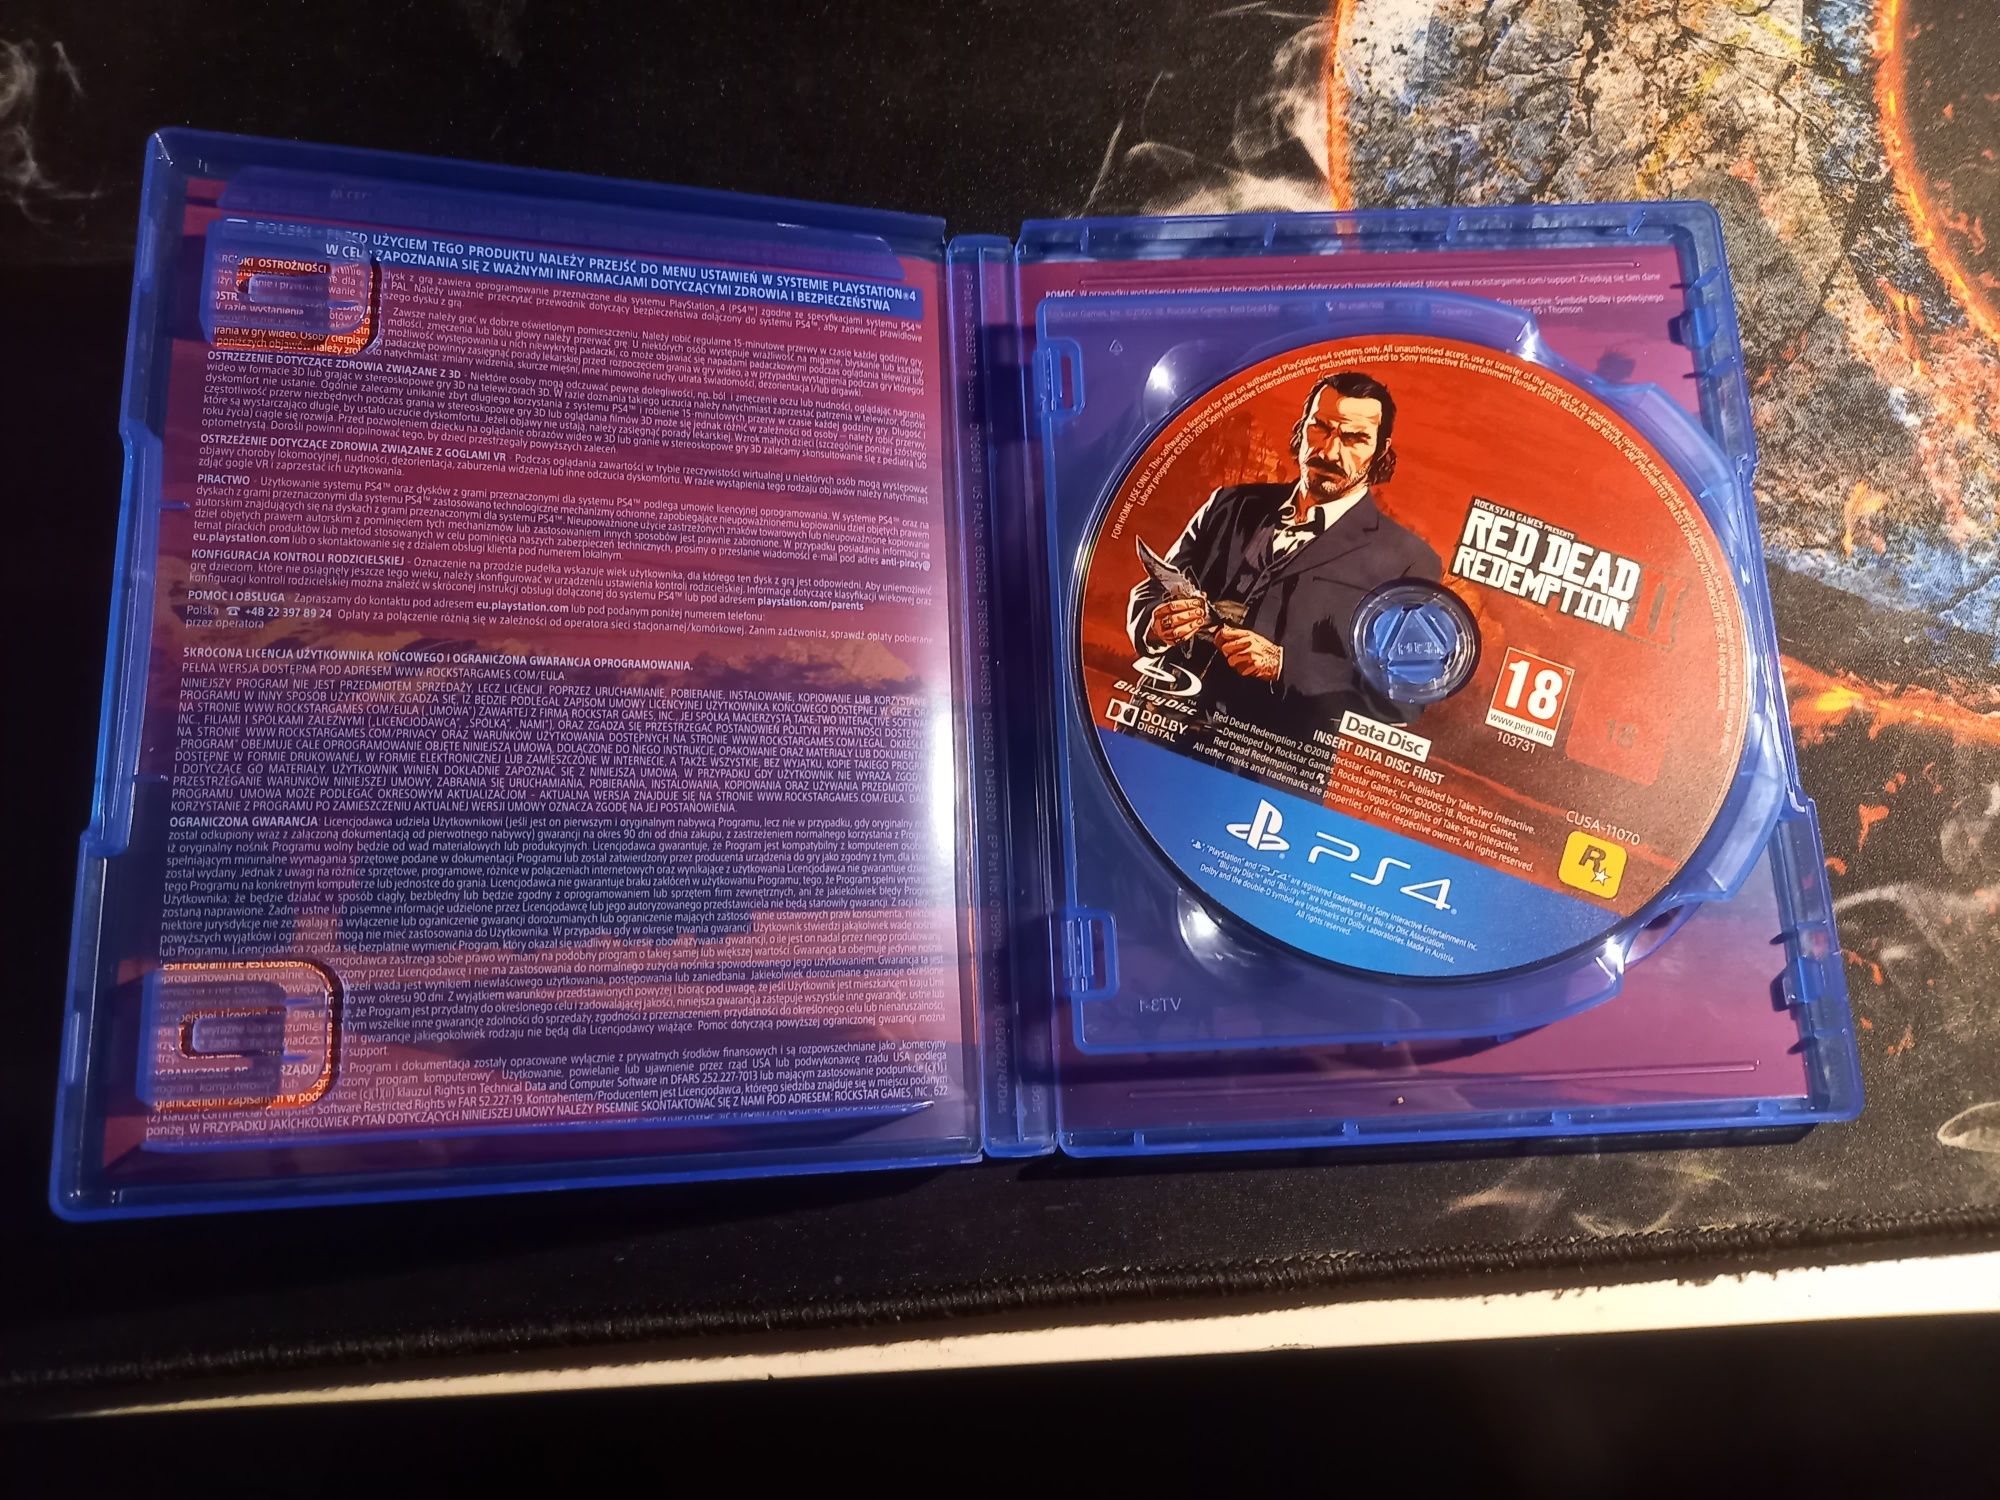 Gra Red Dead Redemption 2 na konsole Ps4
Gra została zagrana pr